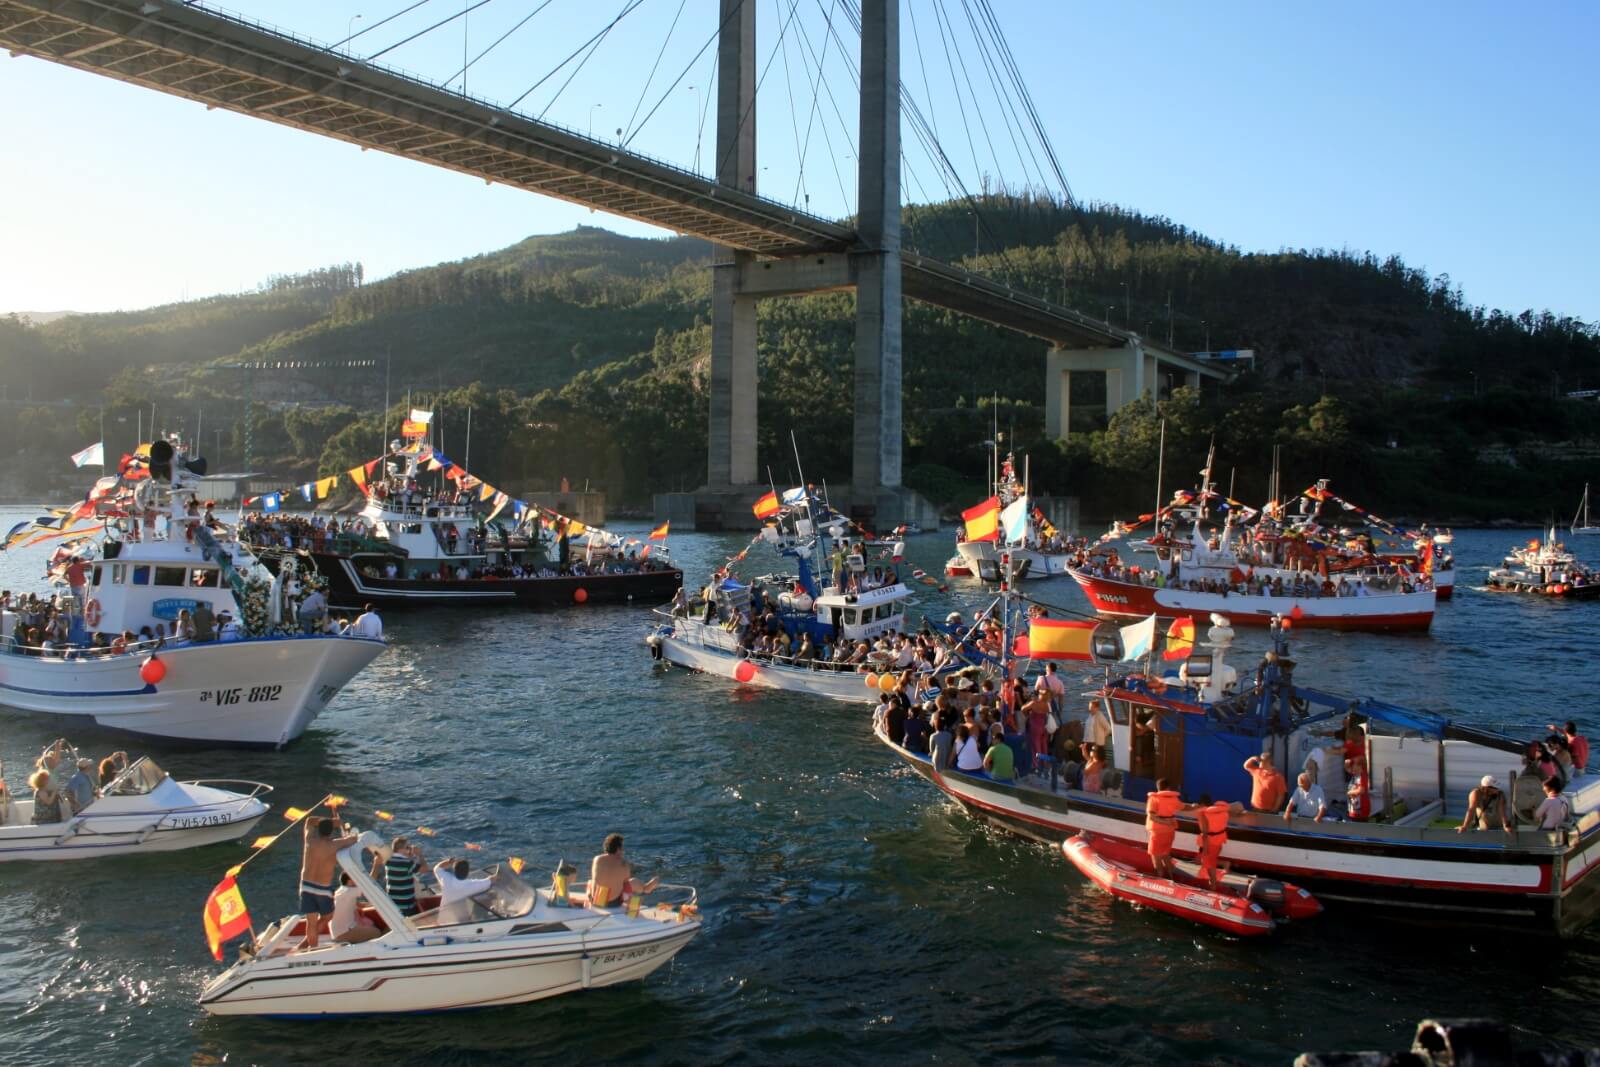 Las 5 Fiestas más Populares en Moaña, Galicia - 2. Fiestas de la Virgen del Carmen